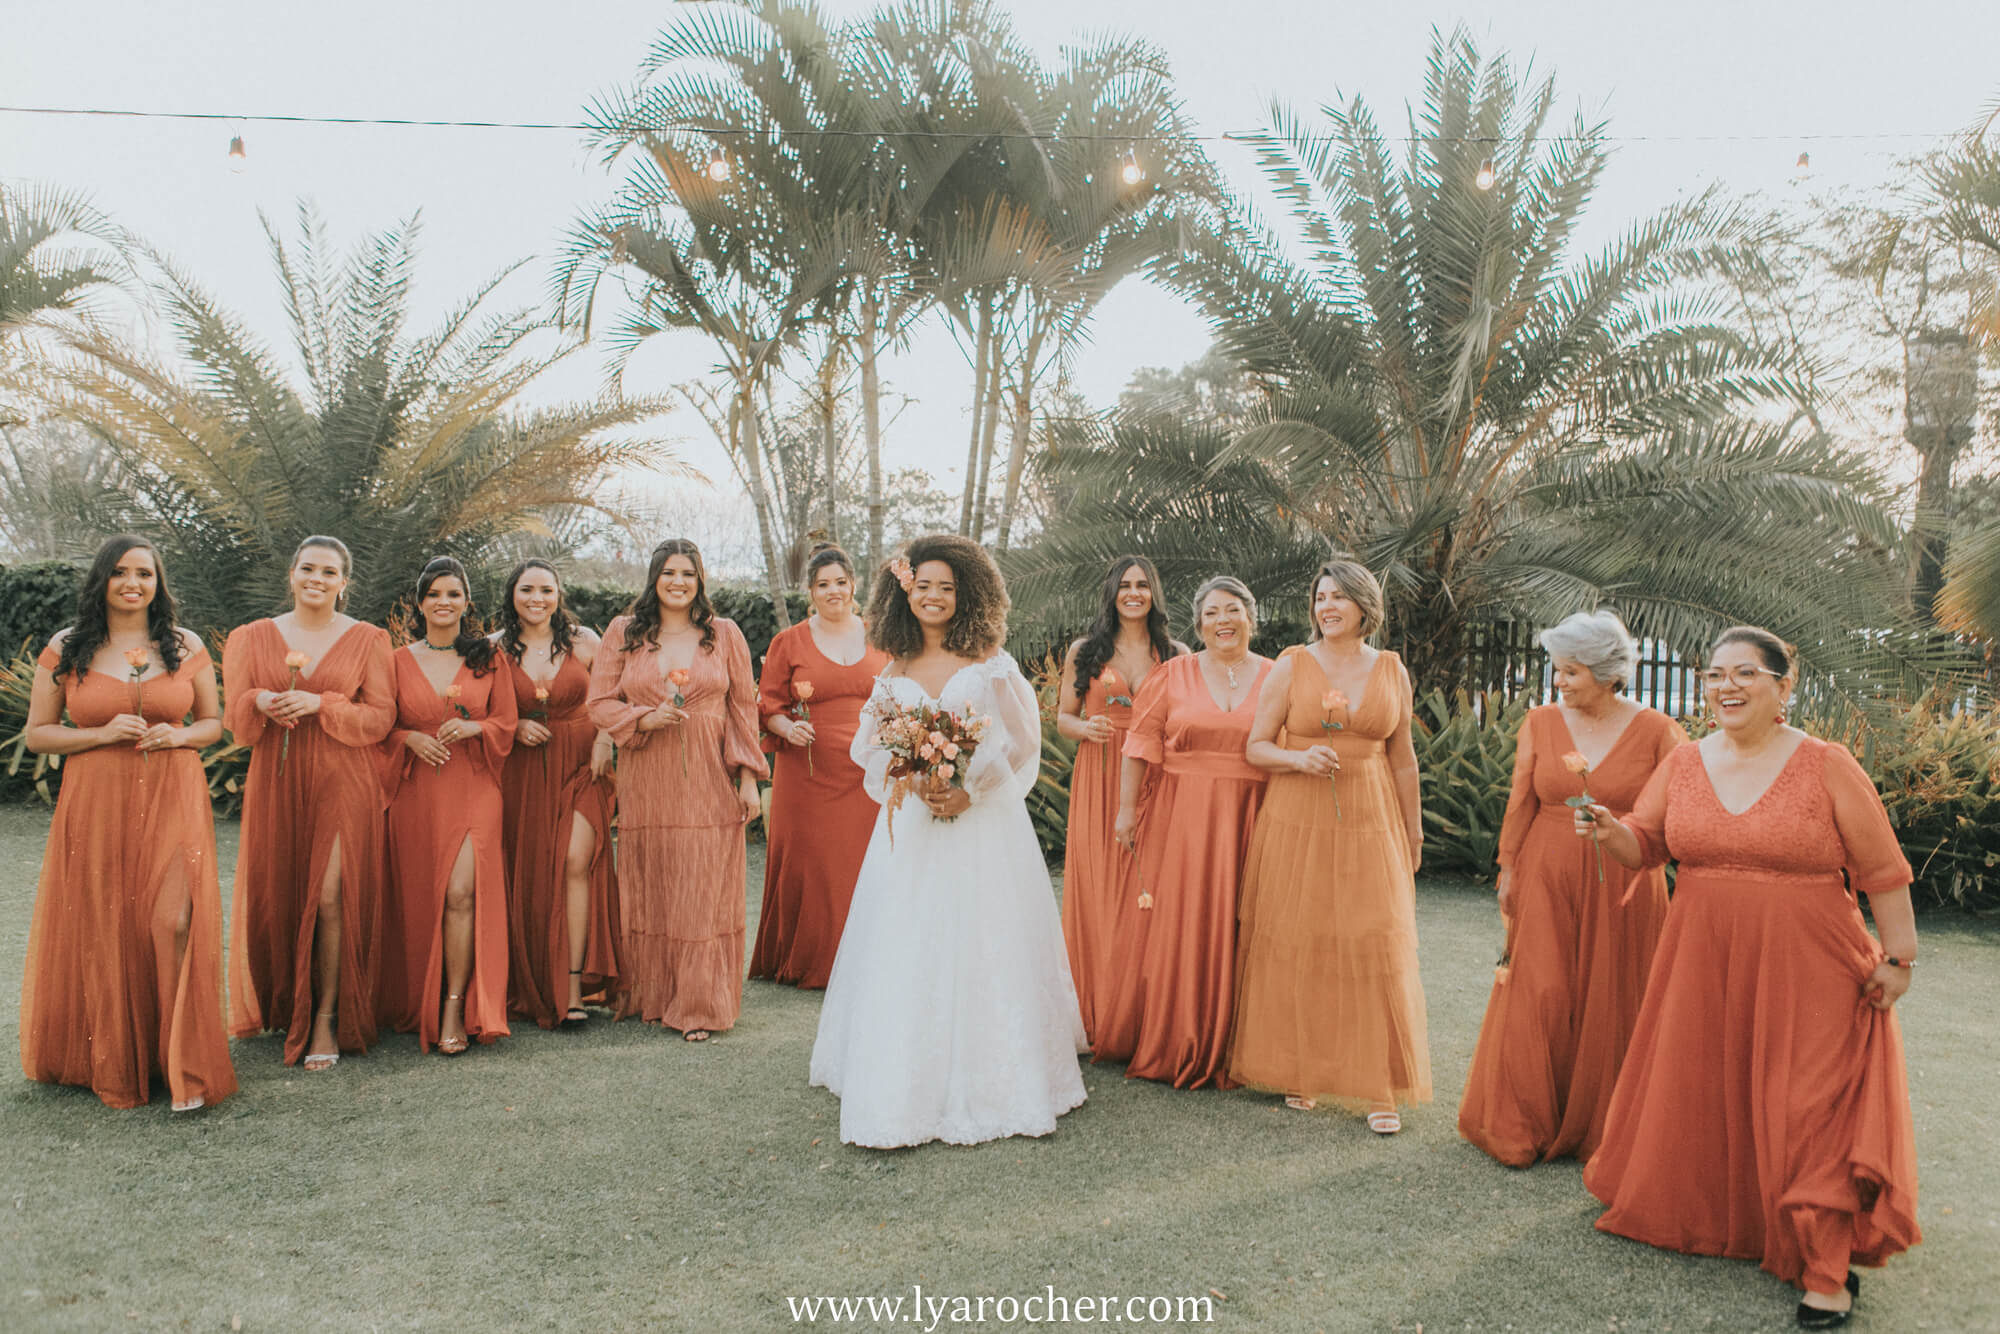 Casamento boho ao ar livre com momentos muito emocionantes em Brasília